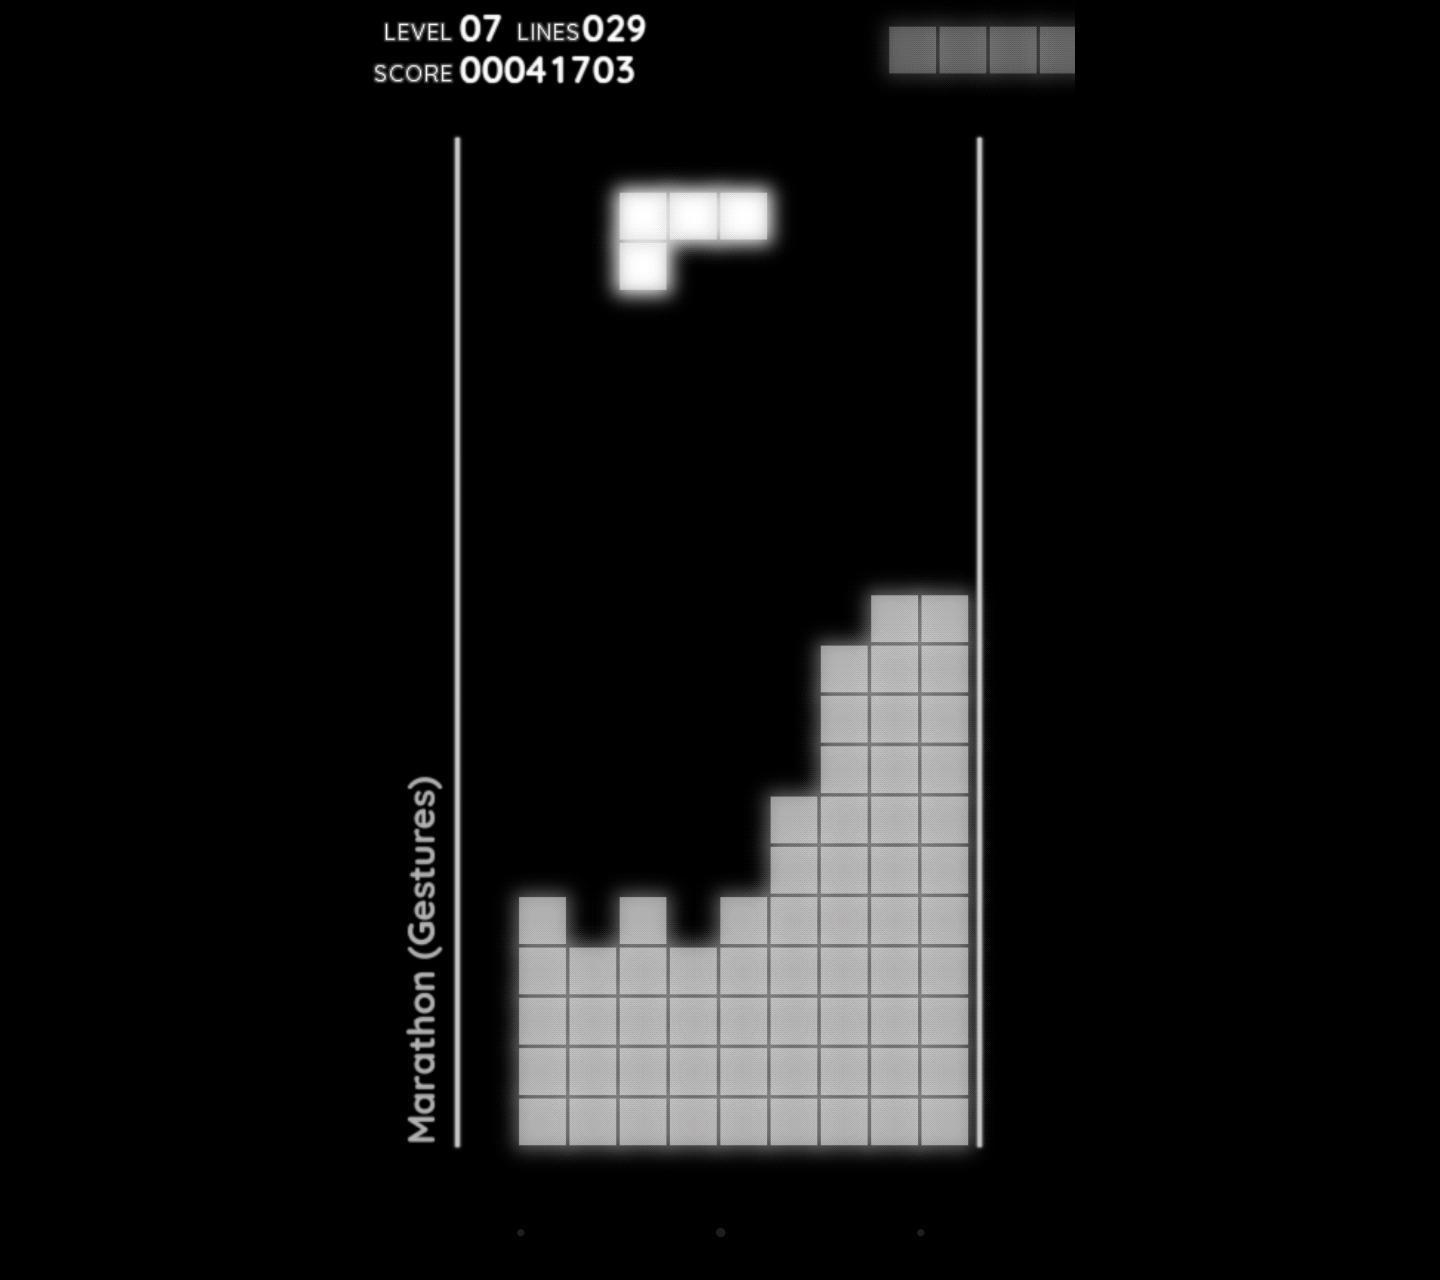 Тетрис все будет. Тетрис с уровнями сложности. Tetris первый релиз. Тетрис классический СССР. Tetris Falling Blocks Денди.